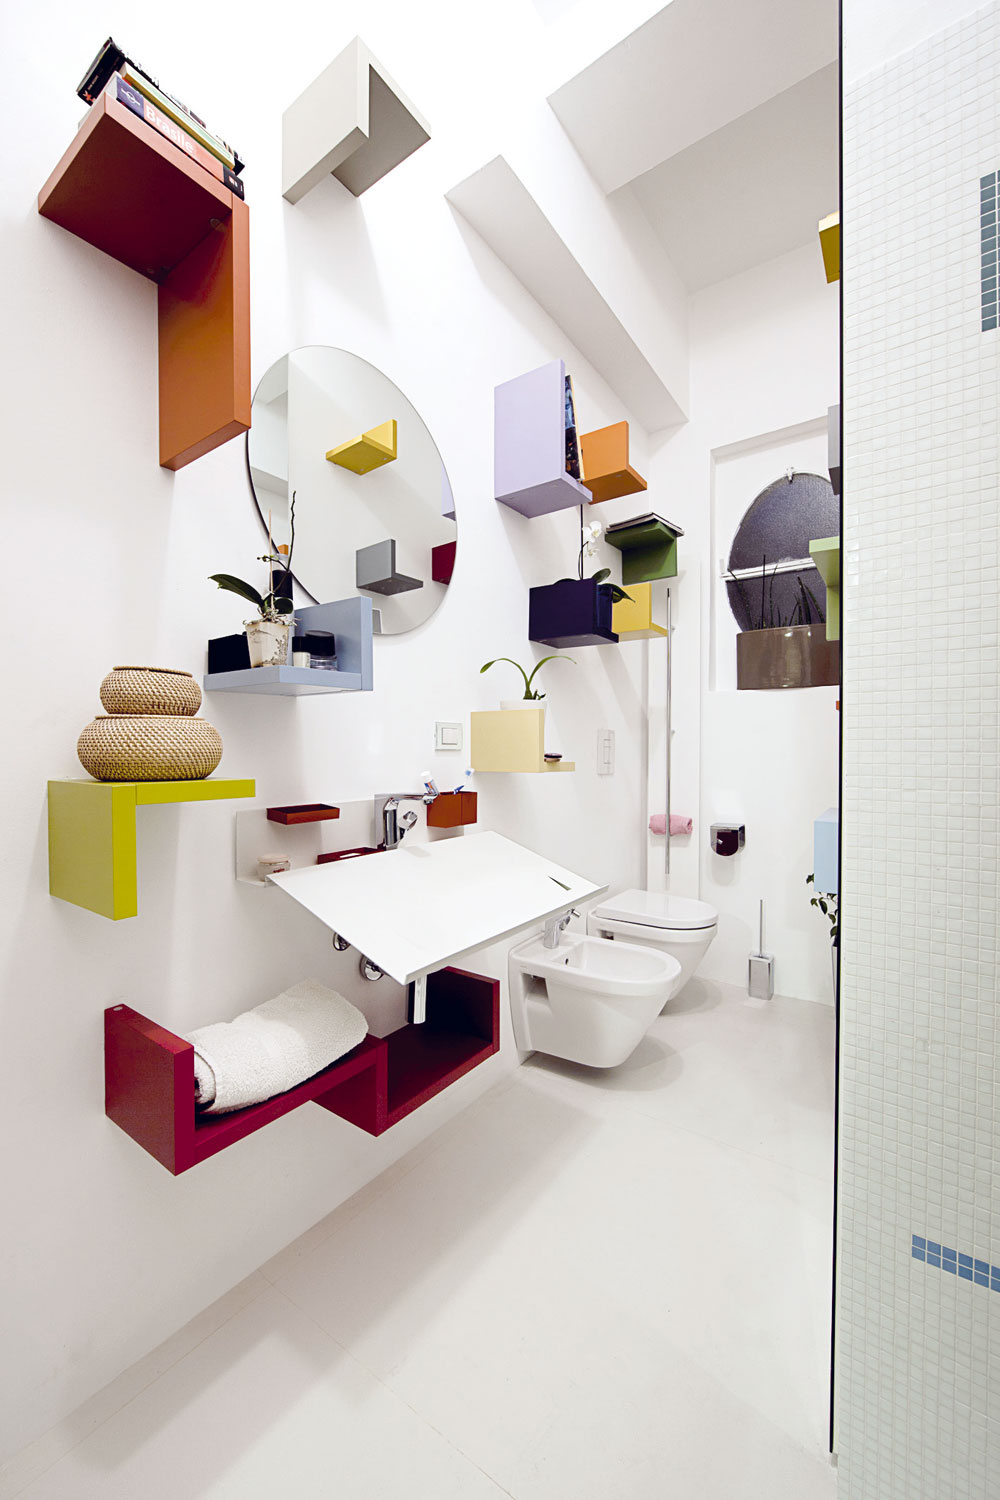 Ak sa vám zdajú bežné police v kúpeľni nudné a uzavreté skrinky by zmenšili priestor, pohrajte sa s tvarmi, farbami a rozložením menších poličiek.